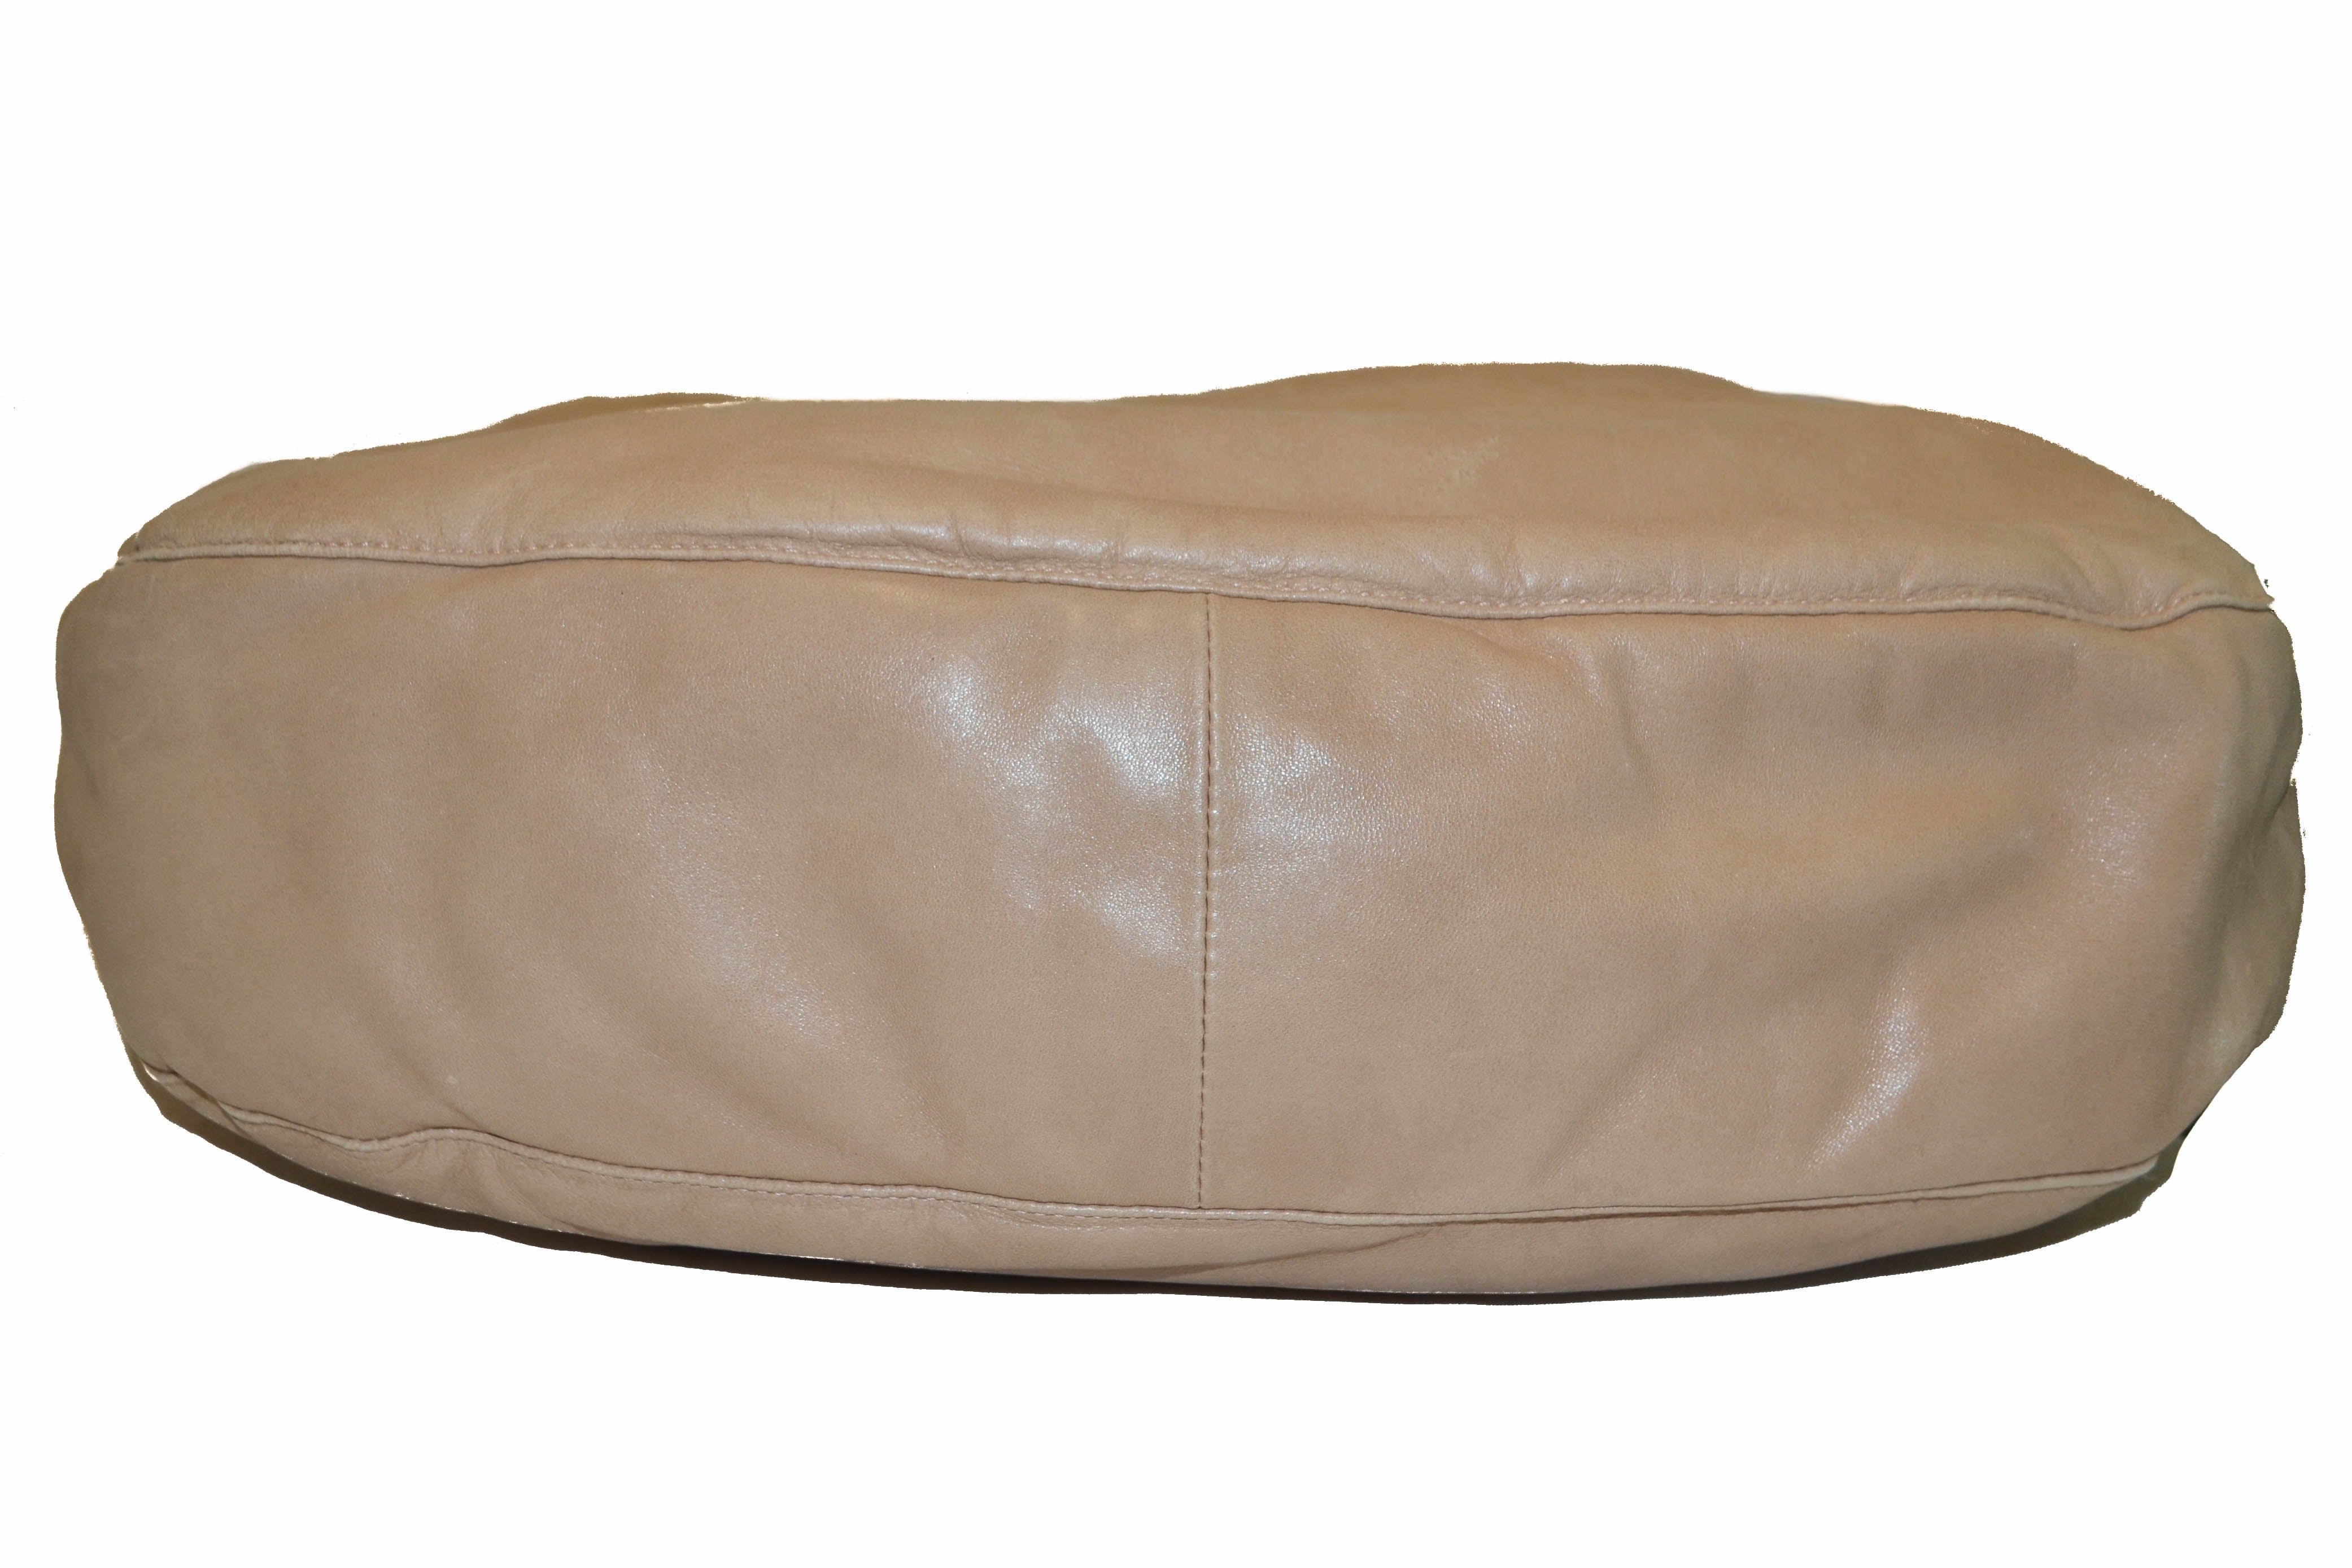 Authentic Bottega Veneta Beige Lambskin Leather Shoulder Bag